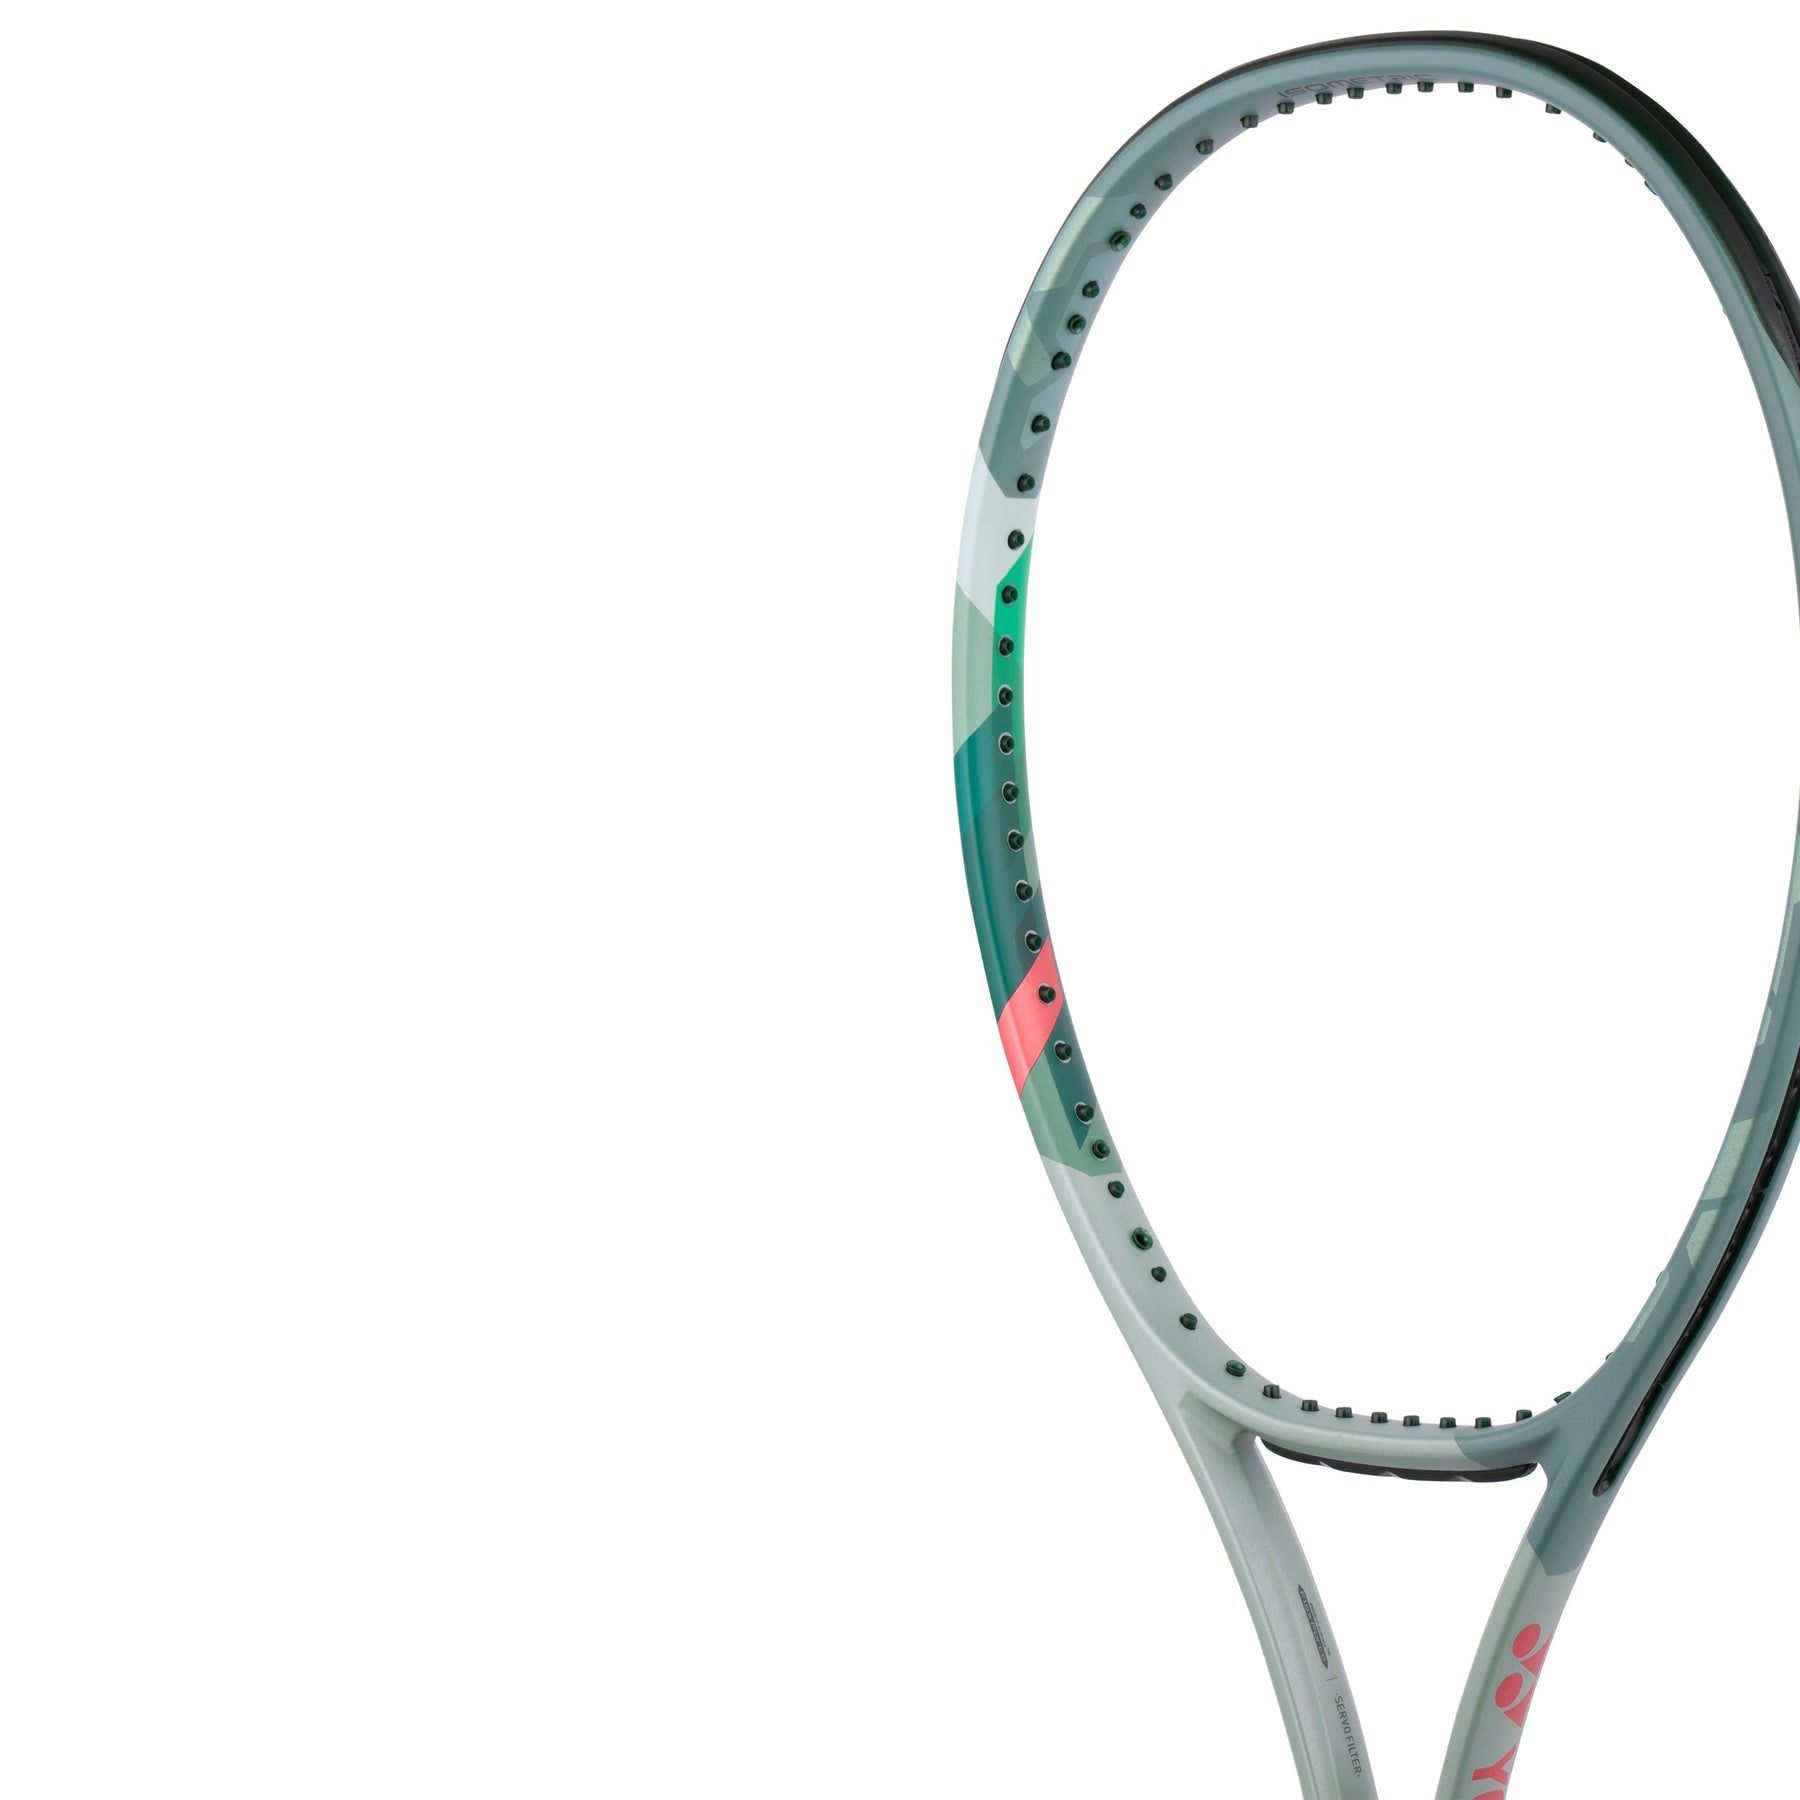 Yonex Percept 100 300g 网球拍（免费重新穿线）- 未穿线